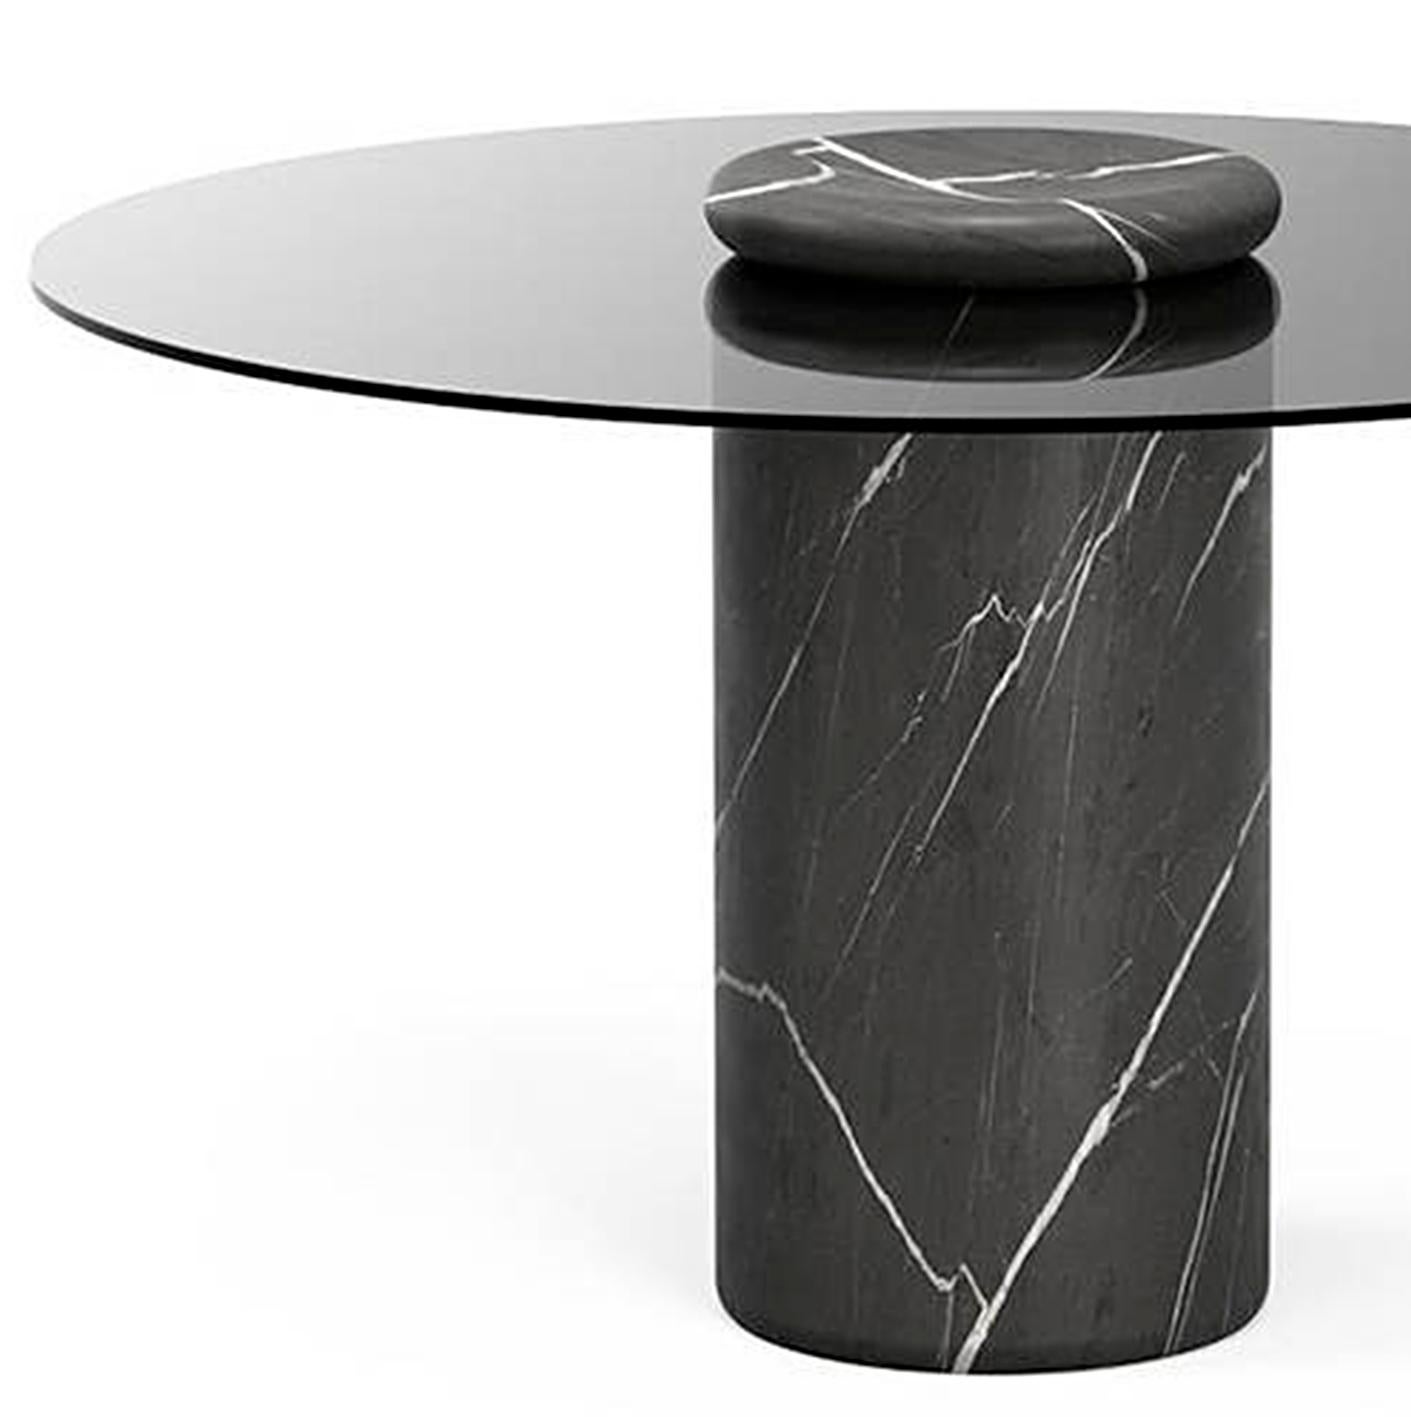 Tisch entworfen von Angelo Mangiarotti.

Castore ist ein Tisch aus Glas und Marmor des italienischen Architekten, Bildhauers und Designers Angelo Mangiarotti. Das 1975 für Sorgente dei Mobili entworfene, unverwechselbare Design wird nun von